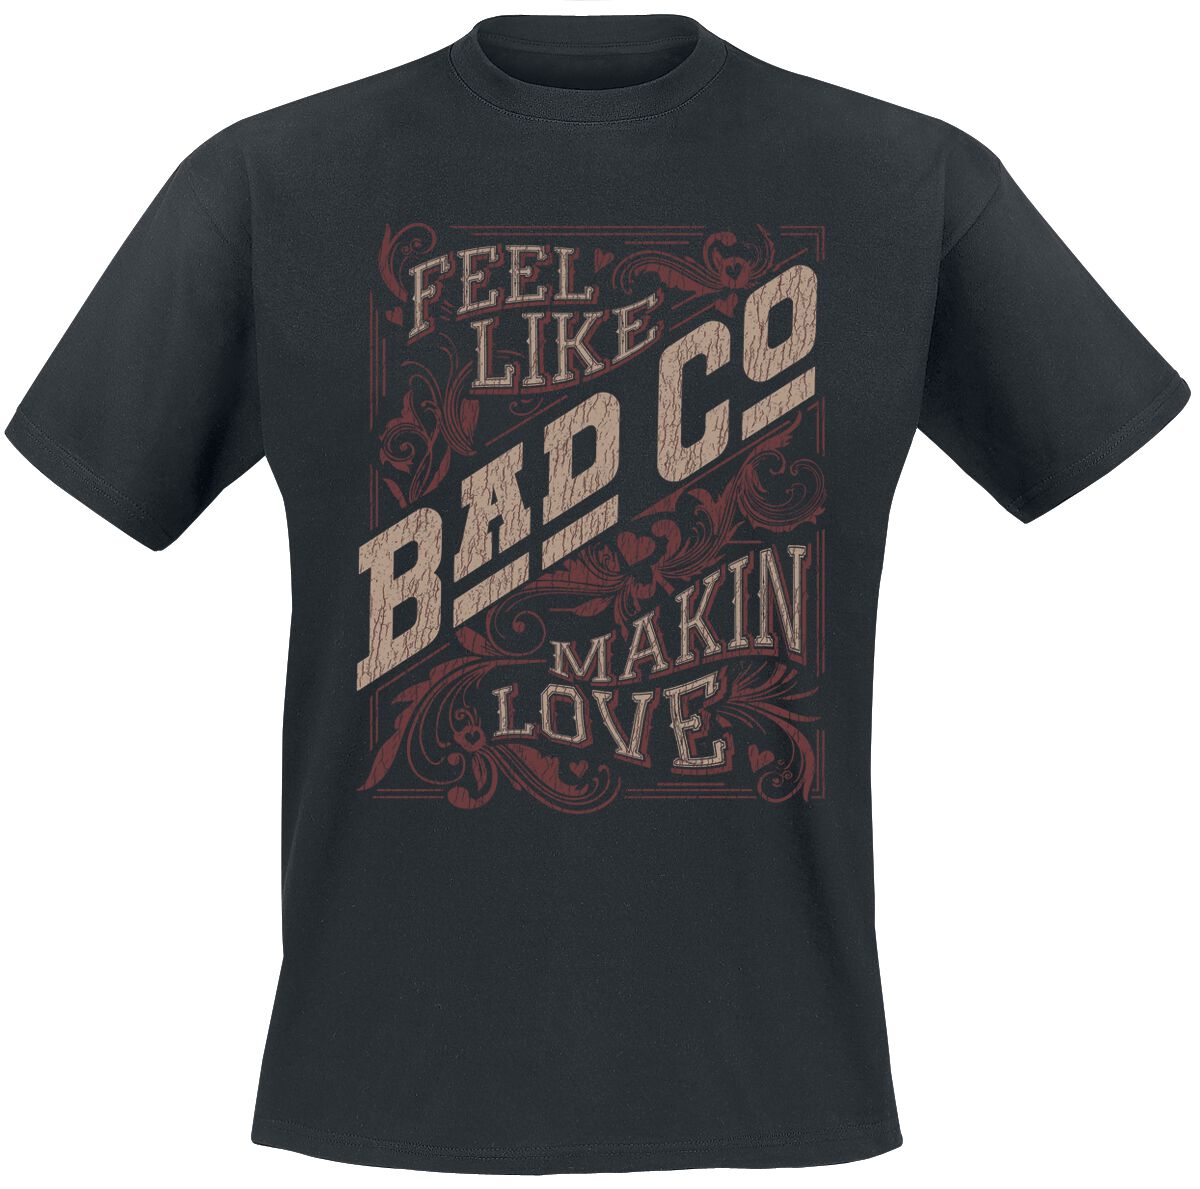 Bad Company Makin Love T-Shirt schwarz in XL